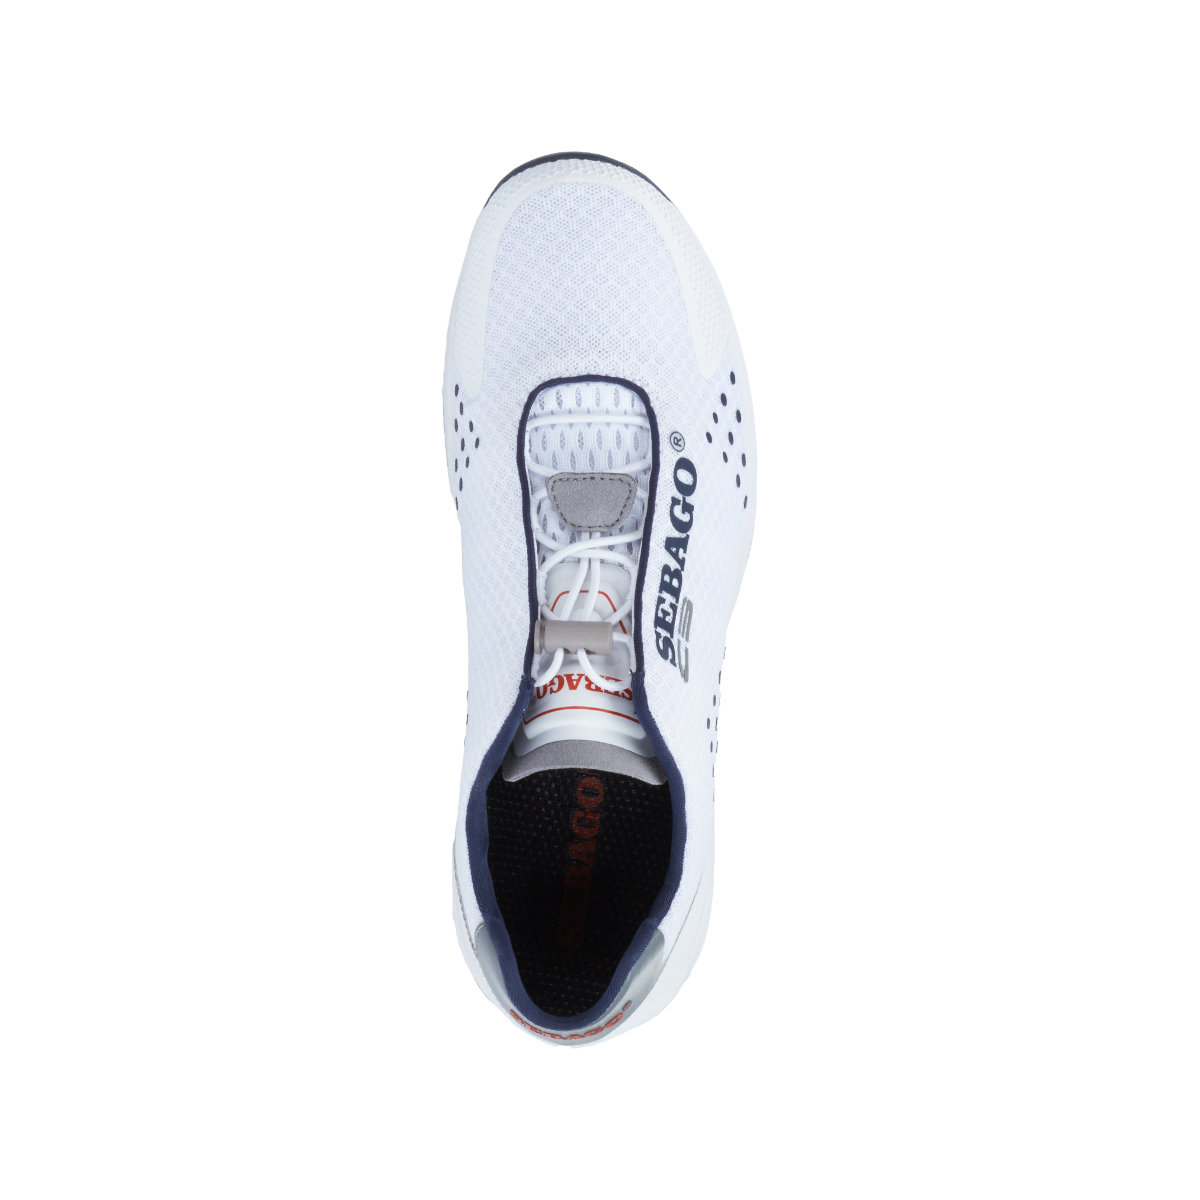 Sebago Cyphon Sea Sport chaussures à voile femme blanche, taille EU 42 (US 10,5)